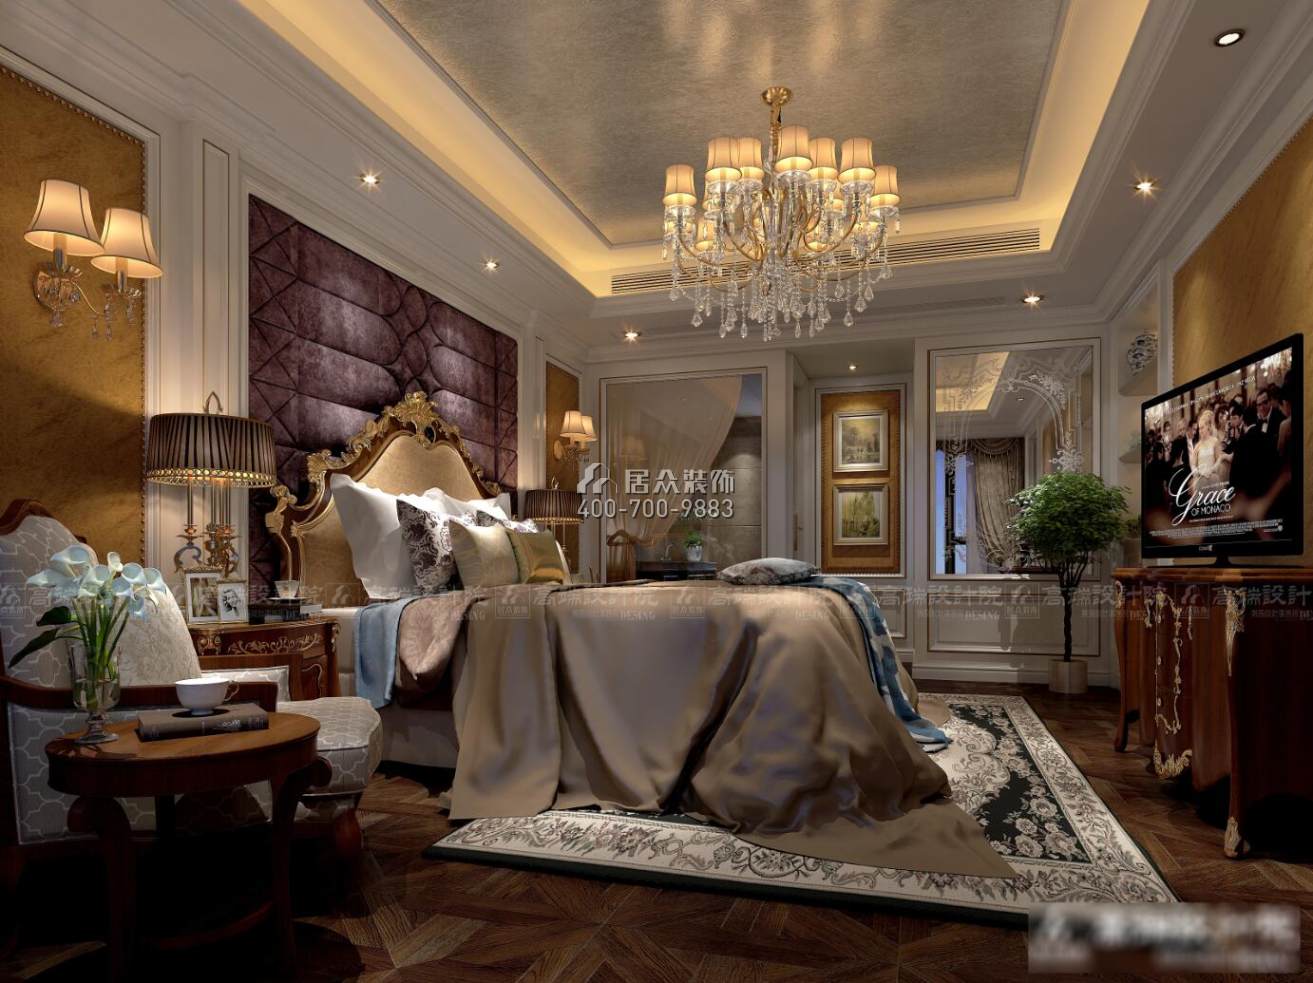 五矿紫湖香醍150平方米欧式风格平层户型卧室装修效果图